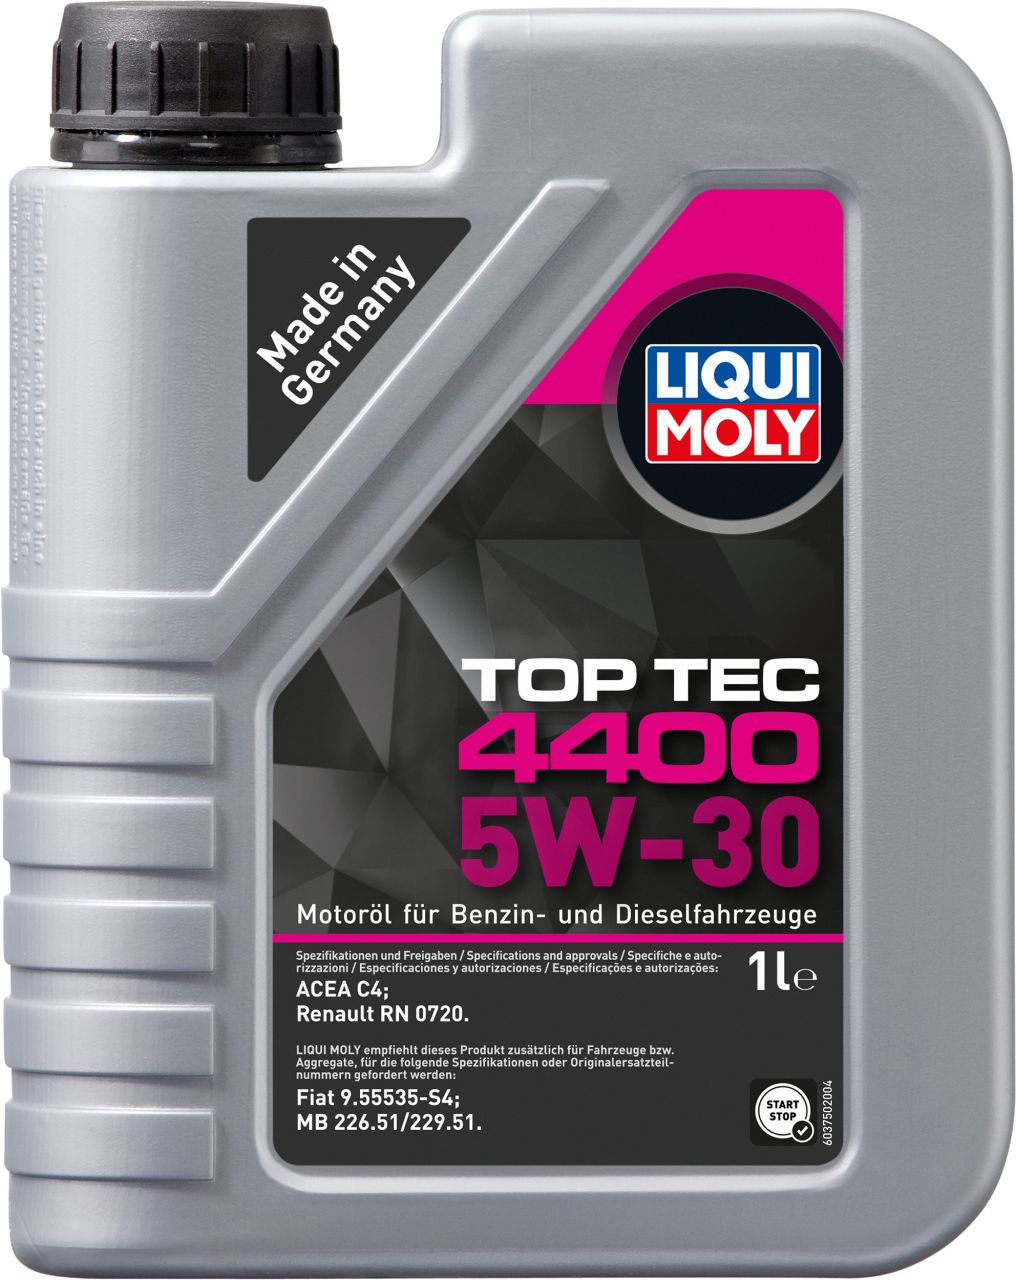 Liqui Moly Super Diesel Additiv 3er Set 5120-750 750ml